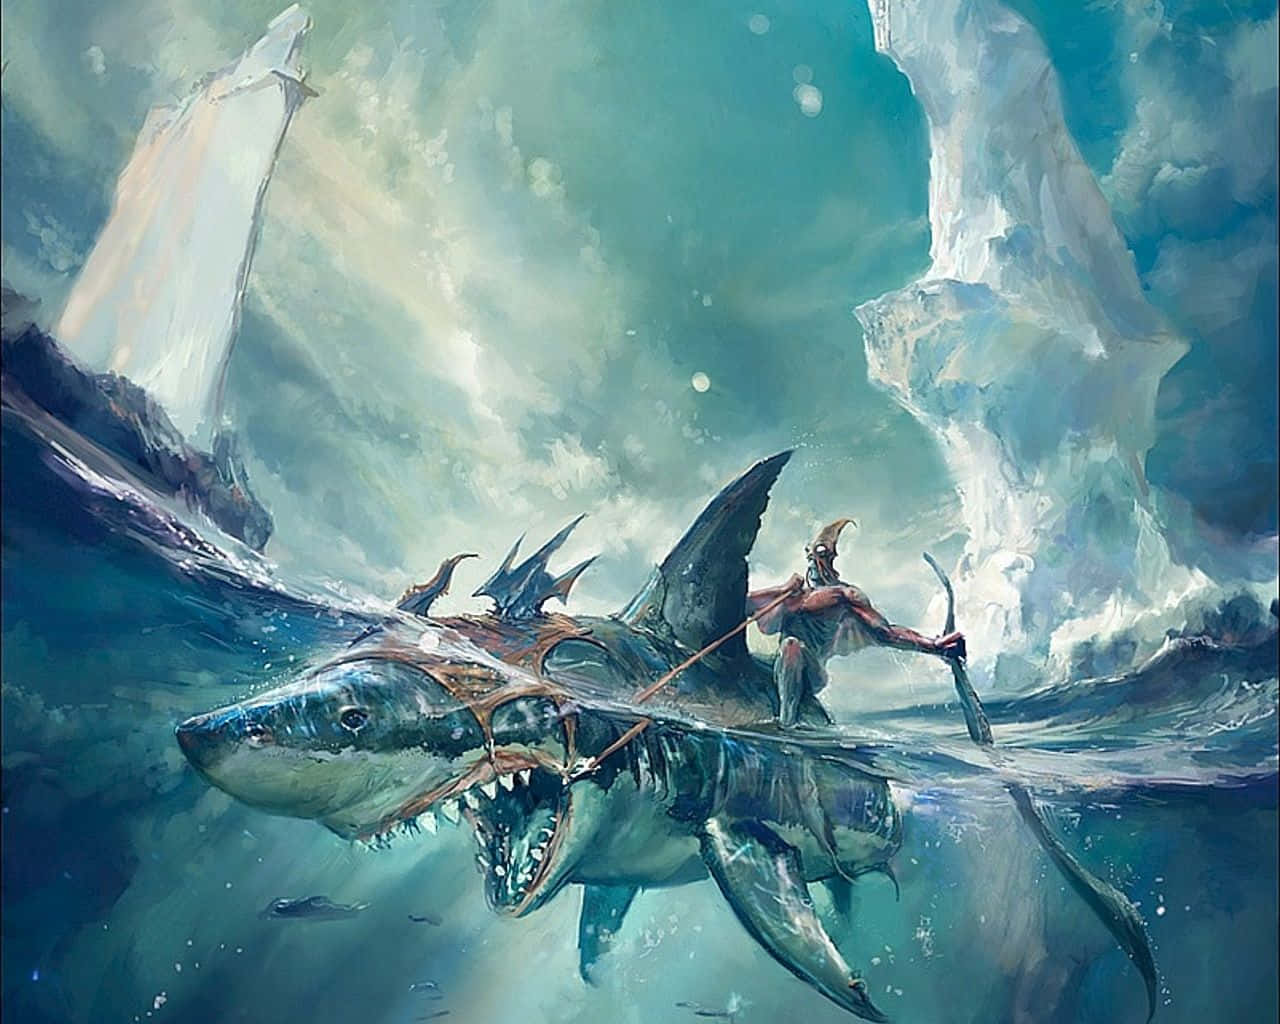 Cool Shark Fantasy Art Wallpaper